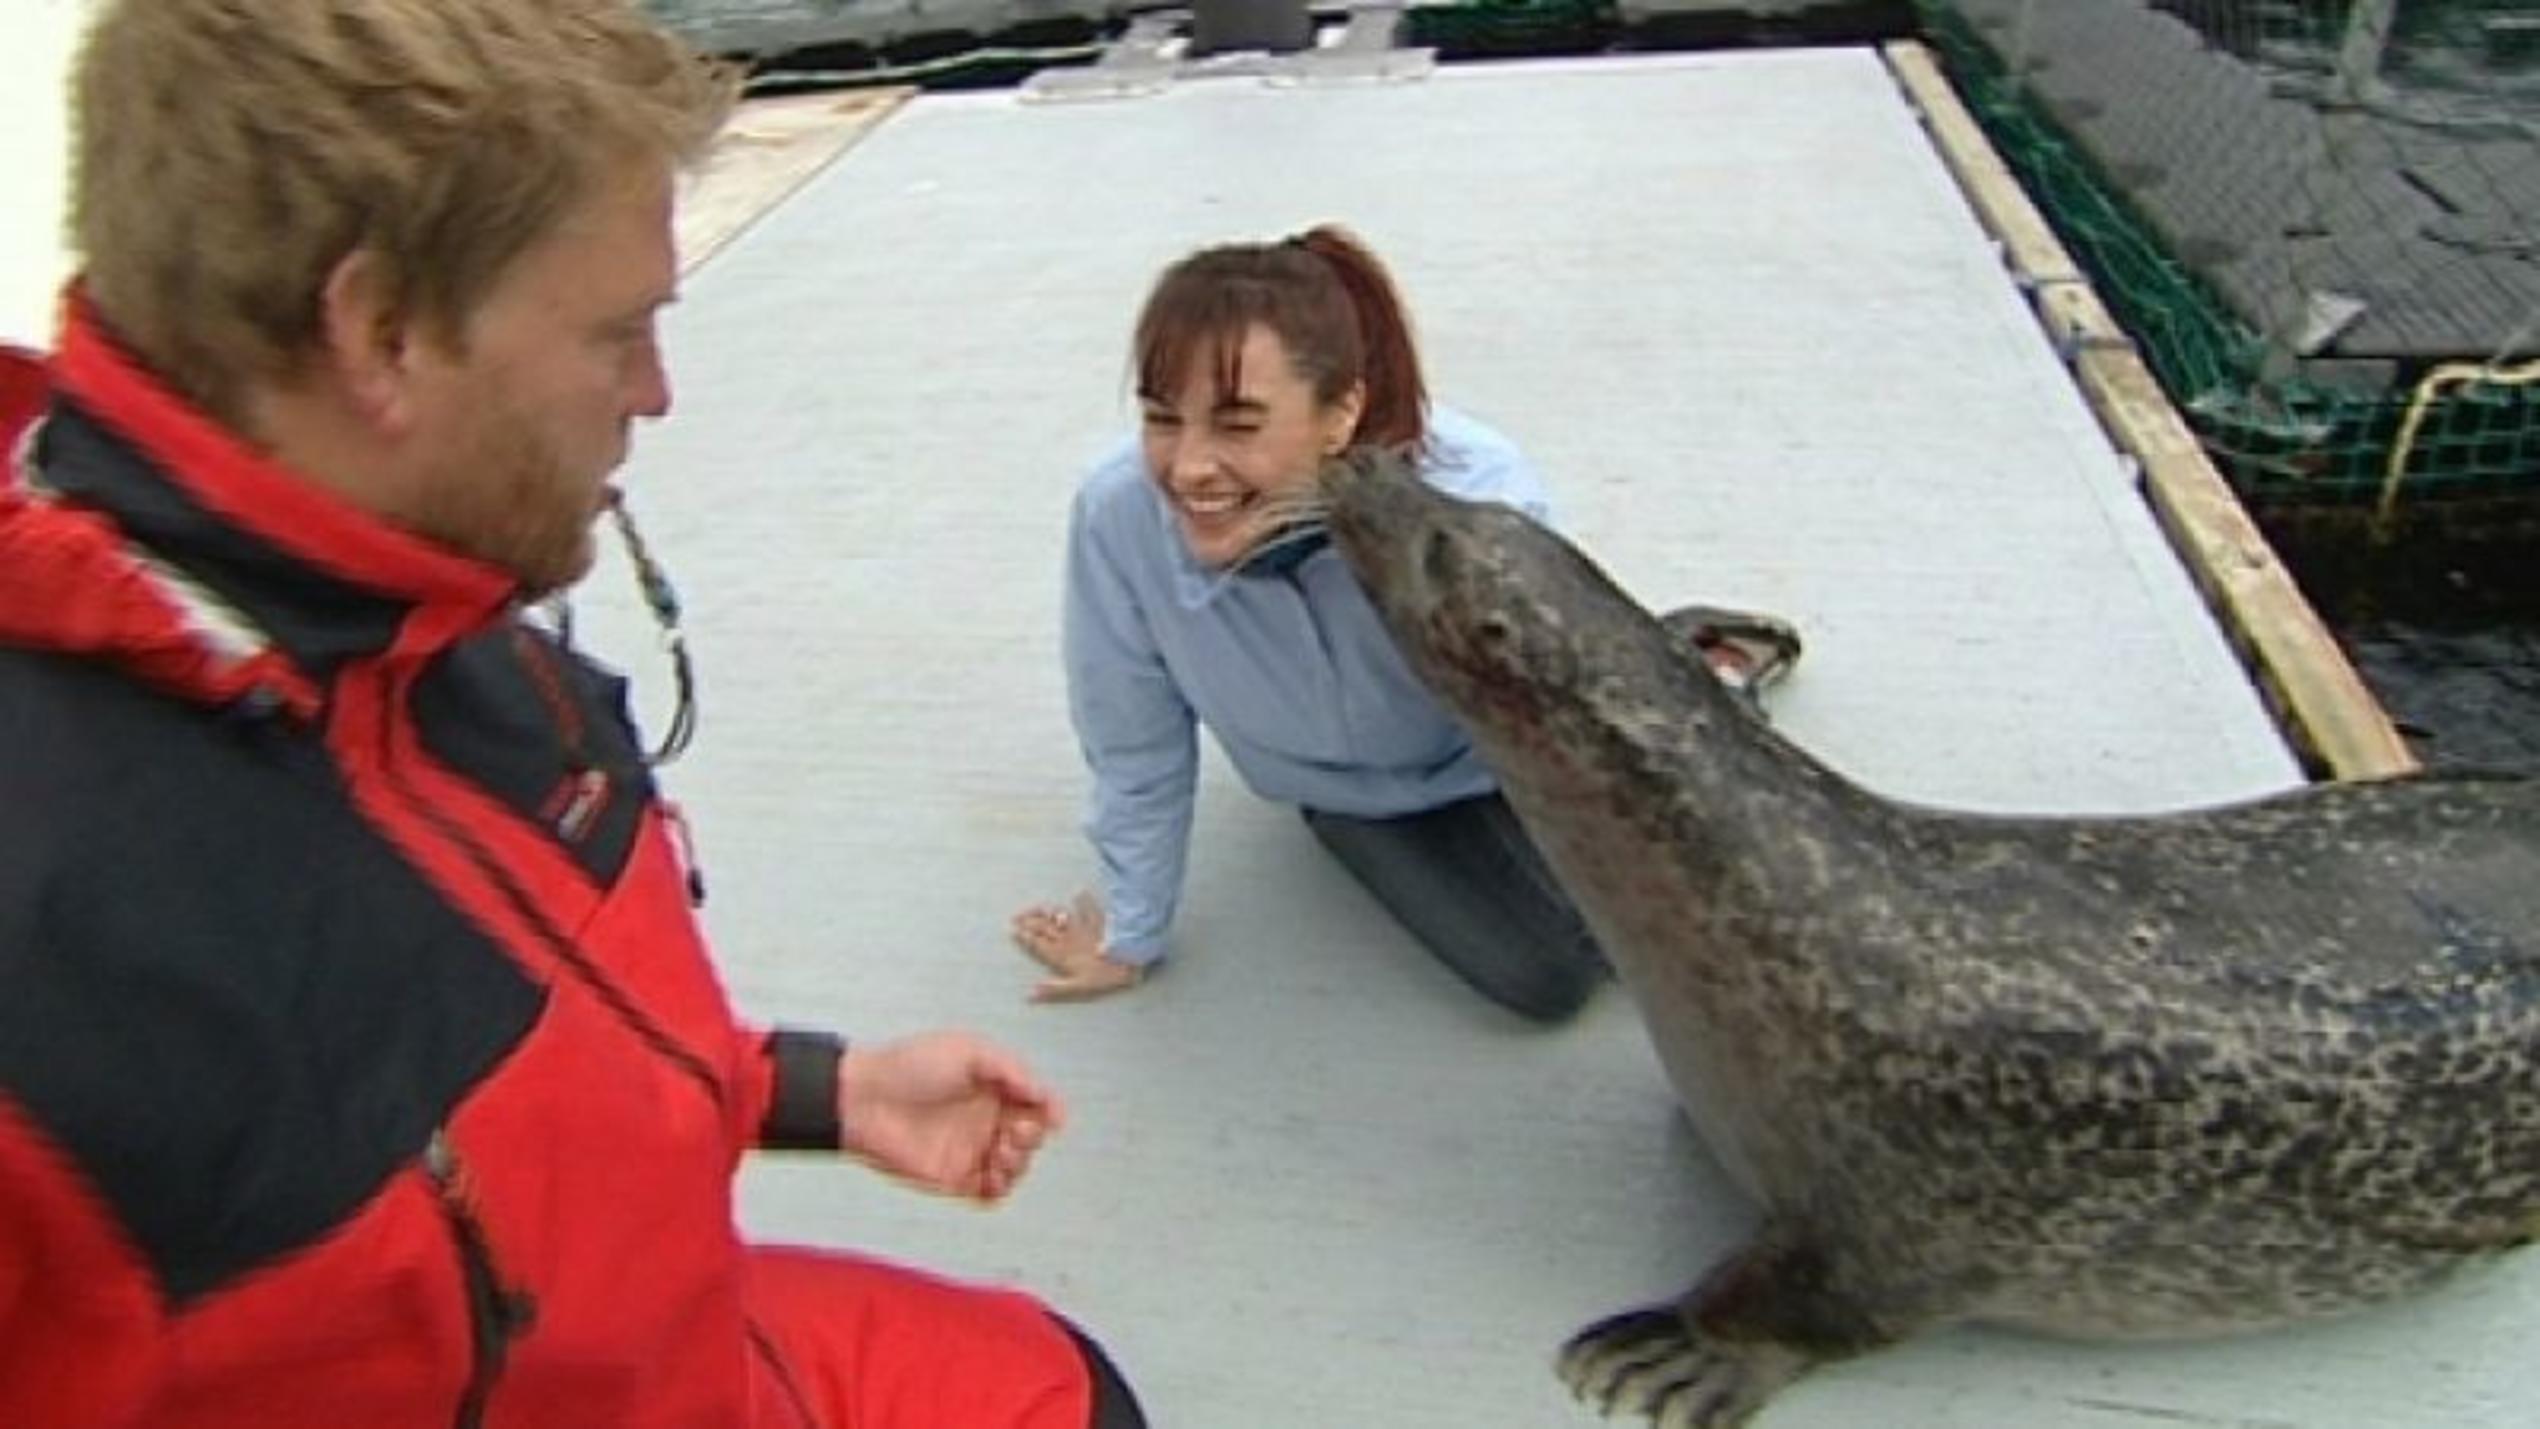 Diana Eichhorn besucht für hundkatzemaus das Marine Science Center in Rostock. Foto: VOX/VP